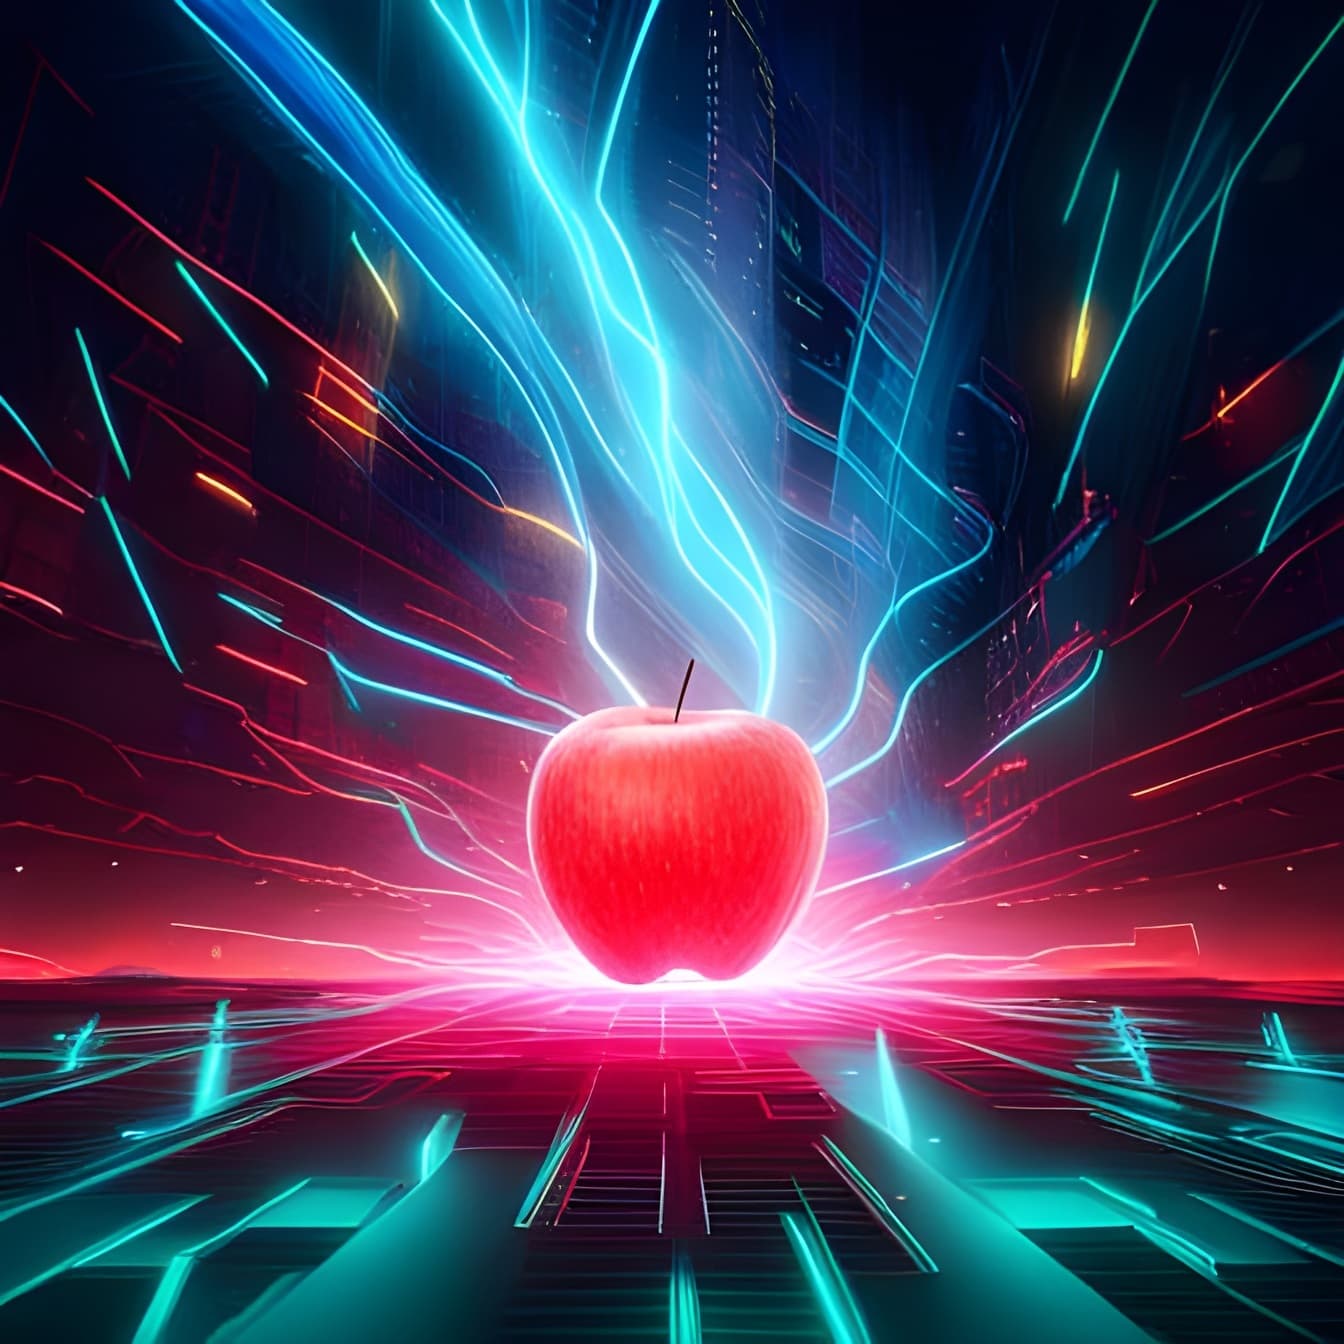 ภาพประกอบของแอปเปิ้ลสีแดงเข้มพร้อมพื้นหลังเลเซอร์ไฟสีเขียว